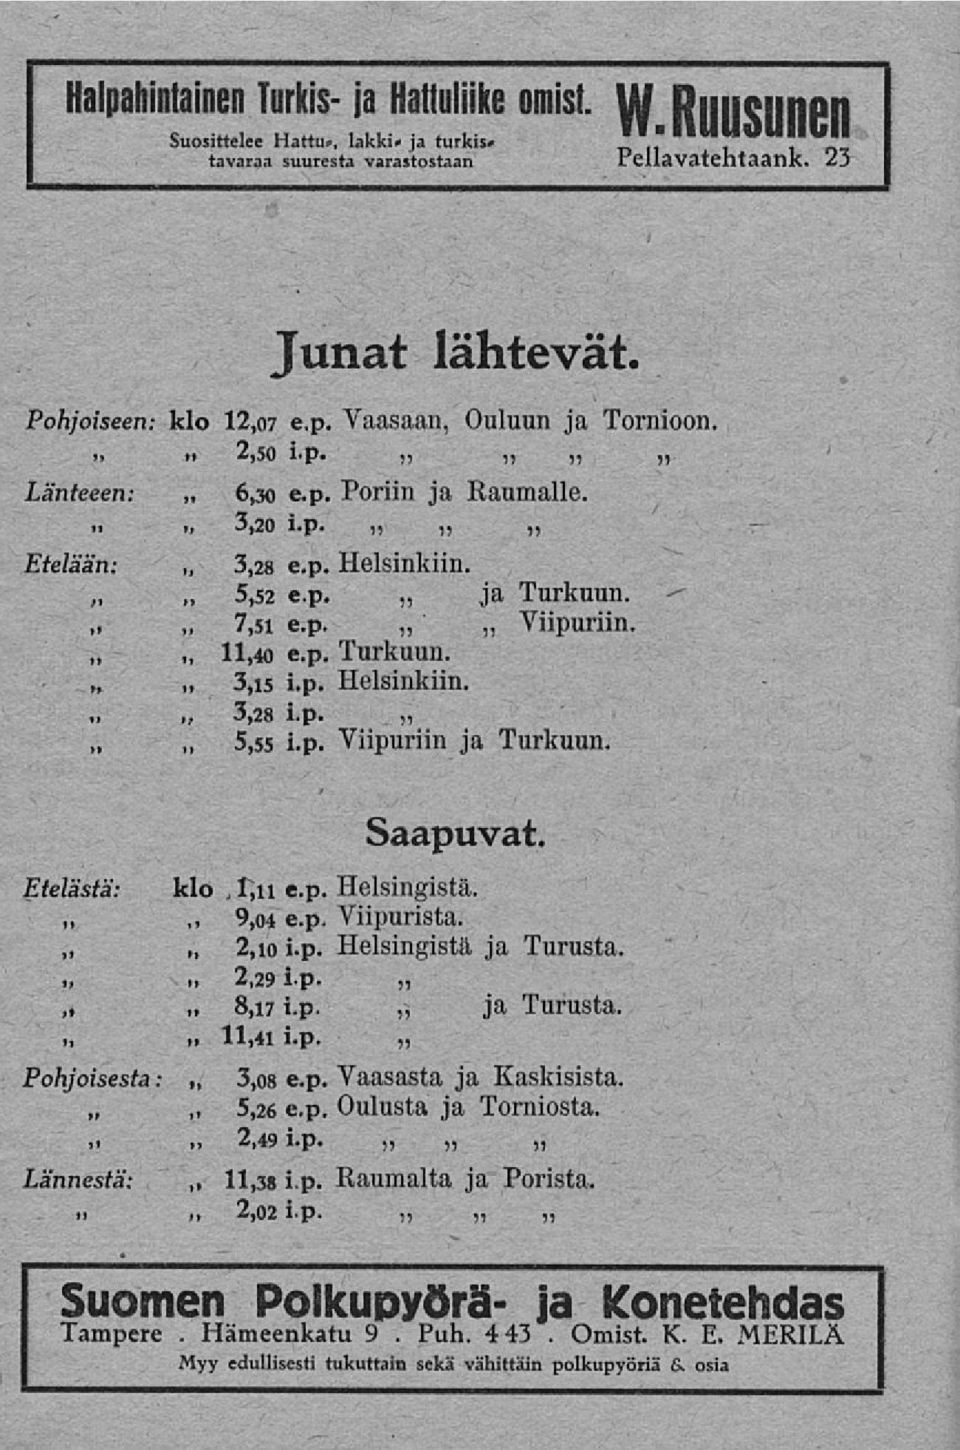 p. Turkuun. 3,i5 i.p. Helsinkiin. 3,28 i.p. 5,55 i.p. Viipuriin ja Turkuun. Etelästä: klo, ~ 9,04 2,i0 8,17 Saapuvat. e.p. Helsingistä. e.p. Viipurista. i.p. Helsingistä ja Turusta. 2,29 i.p. i.p. ja Turusta. ~ 11,41 i.